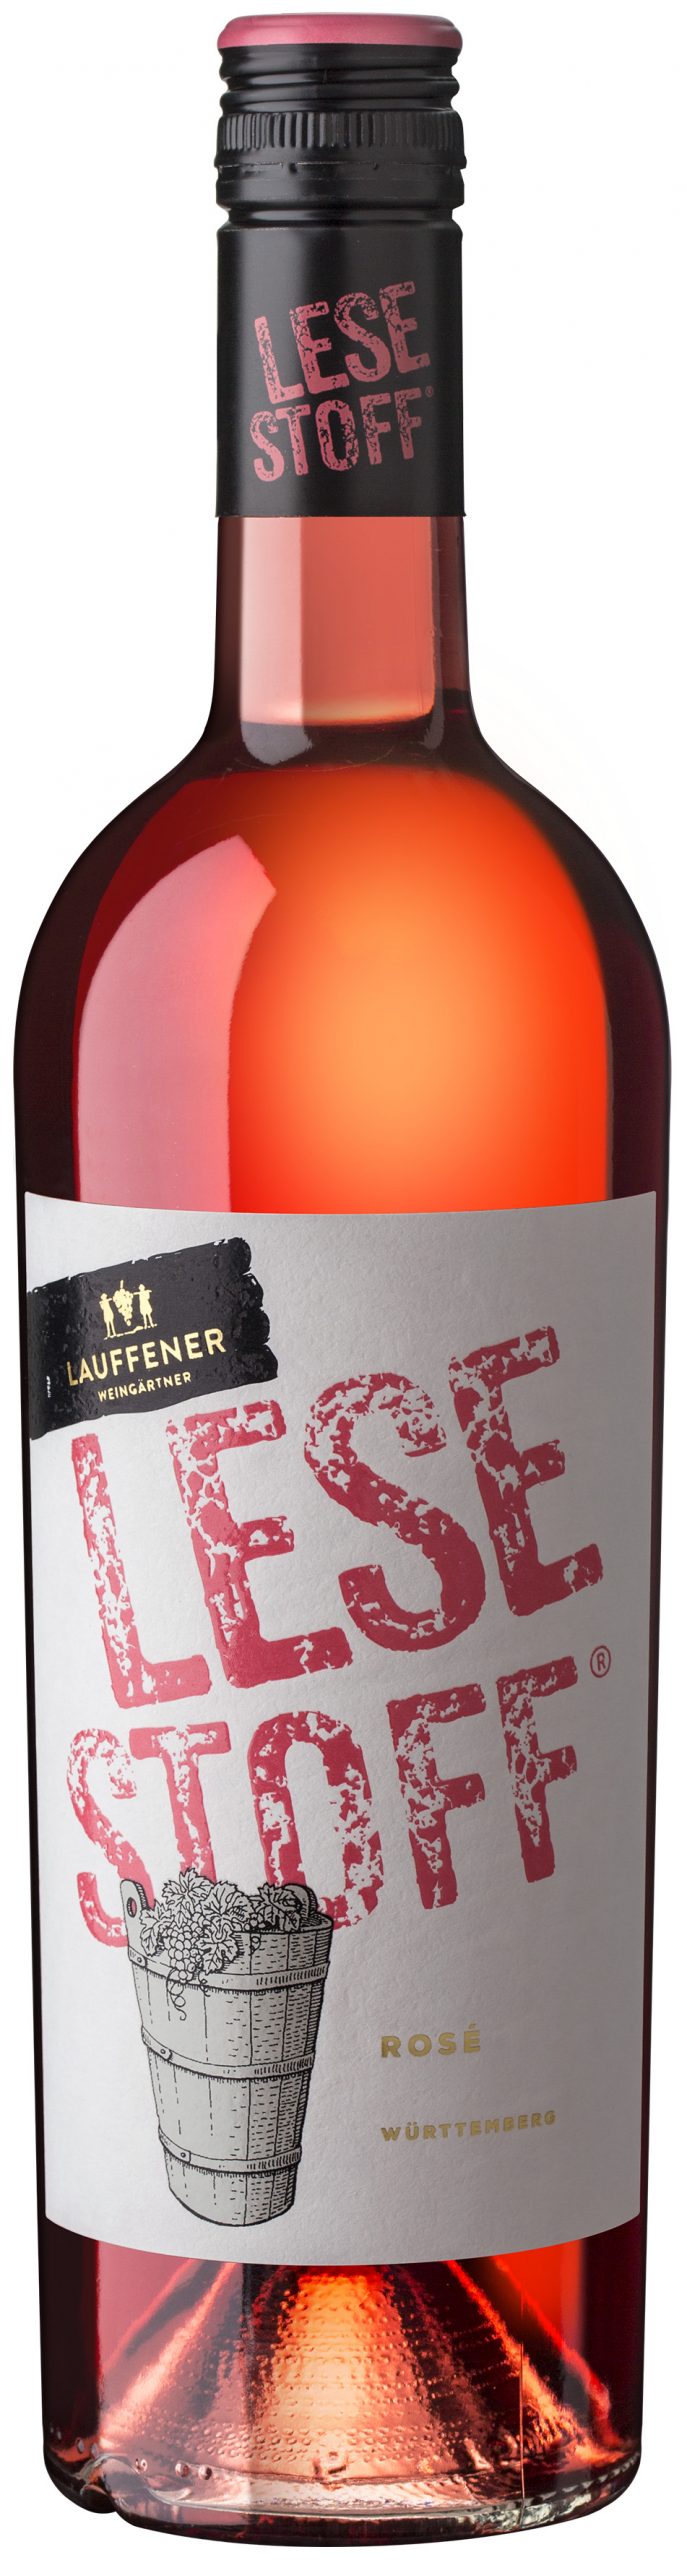 Lesestoff Rosé der Lauffener Weingärtner